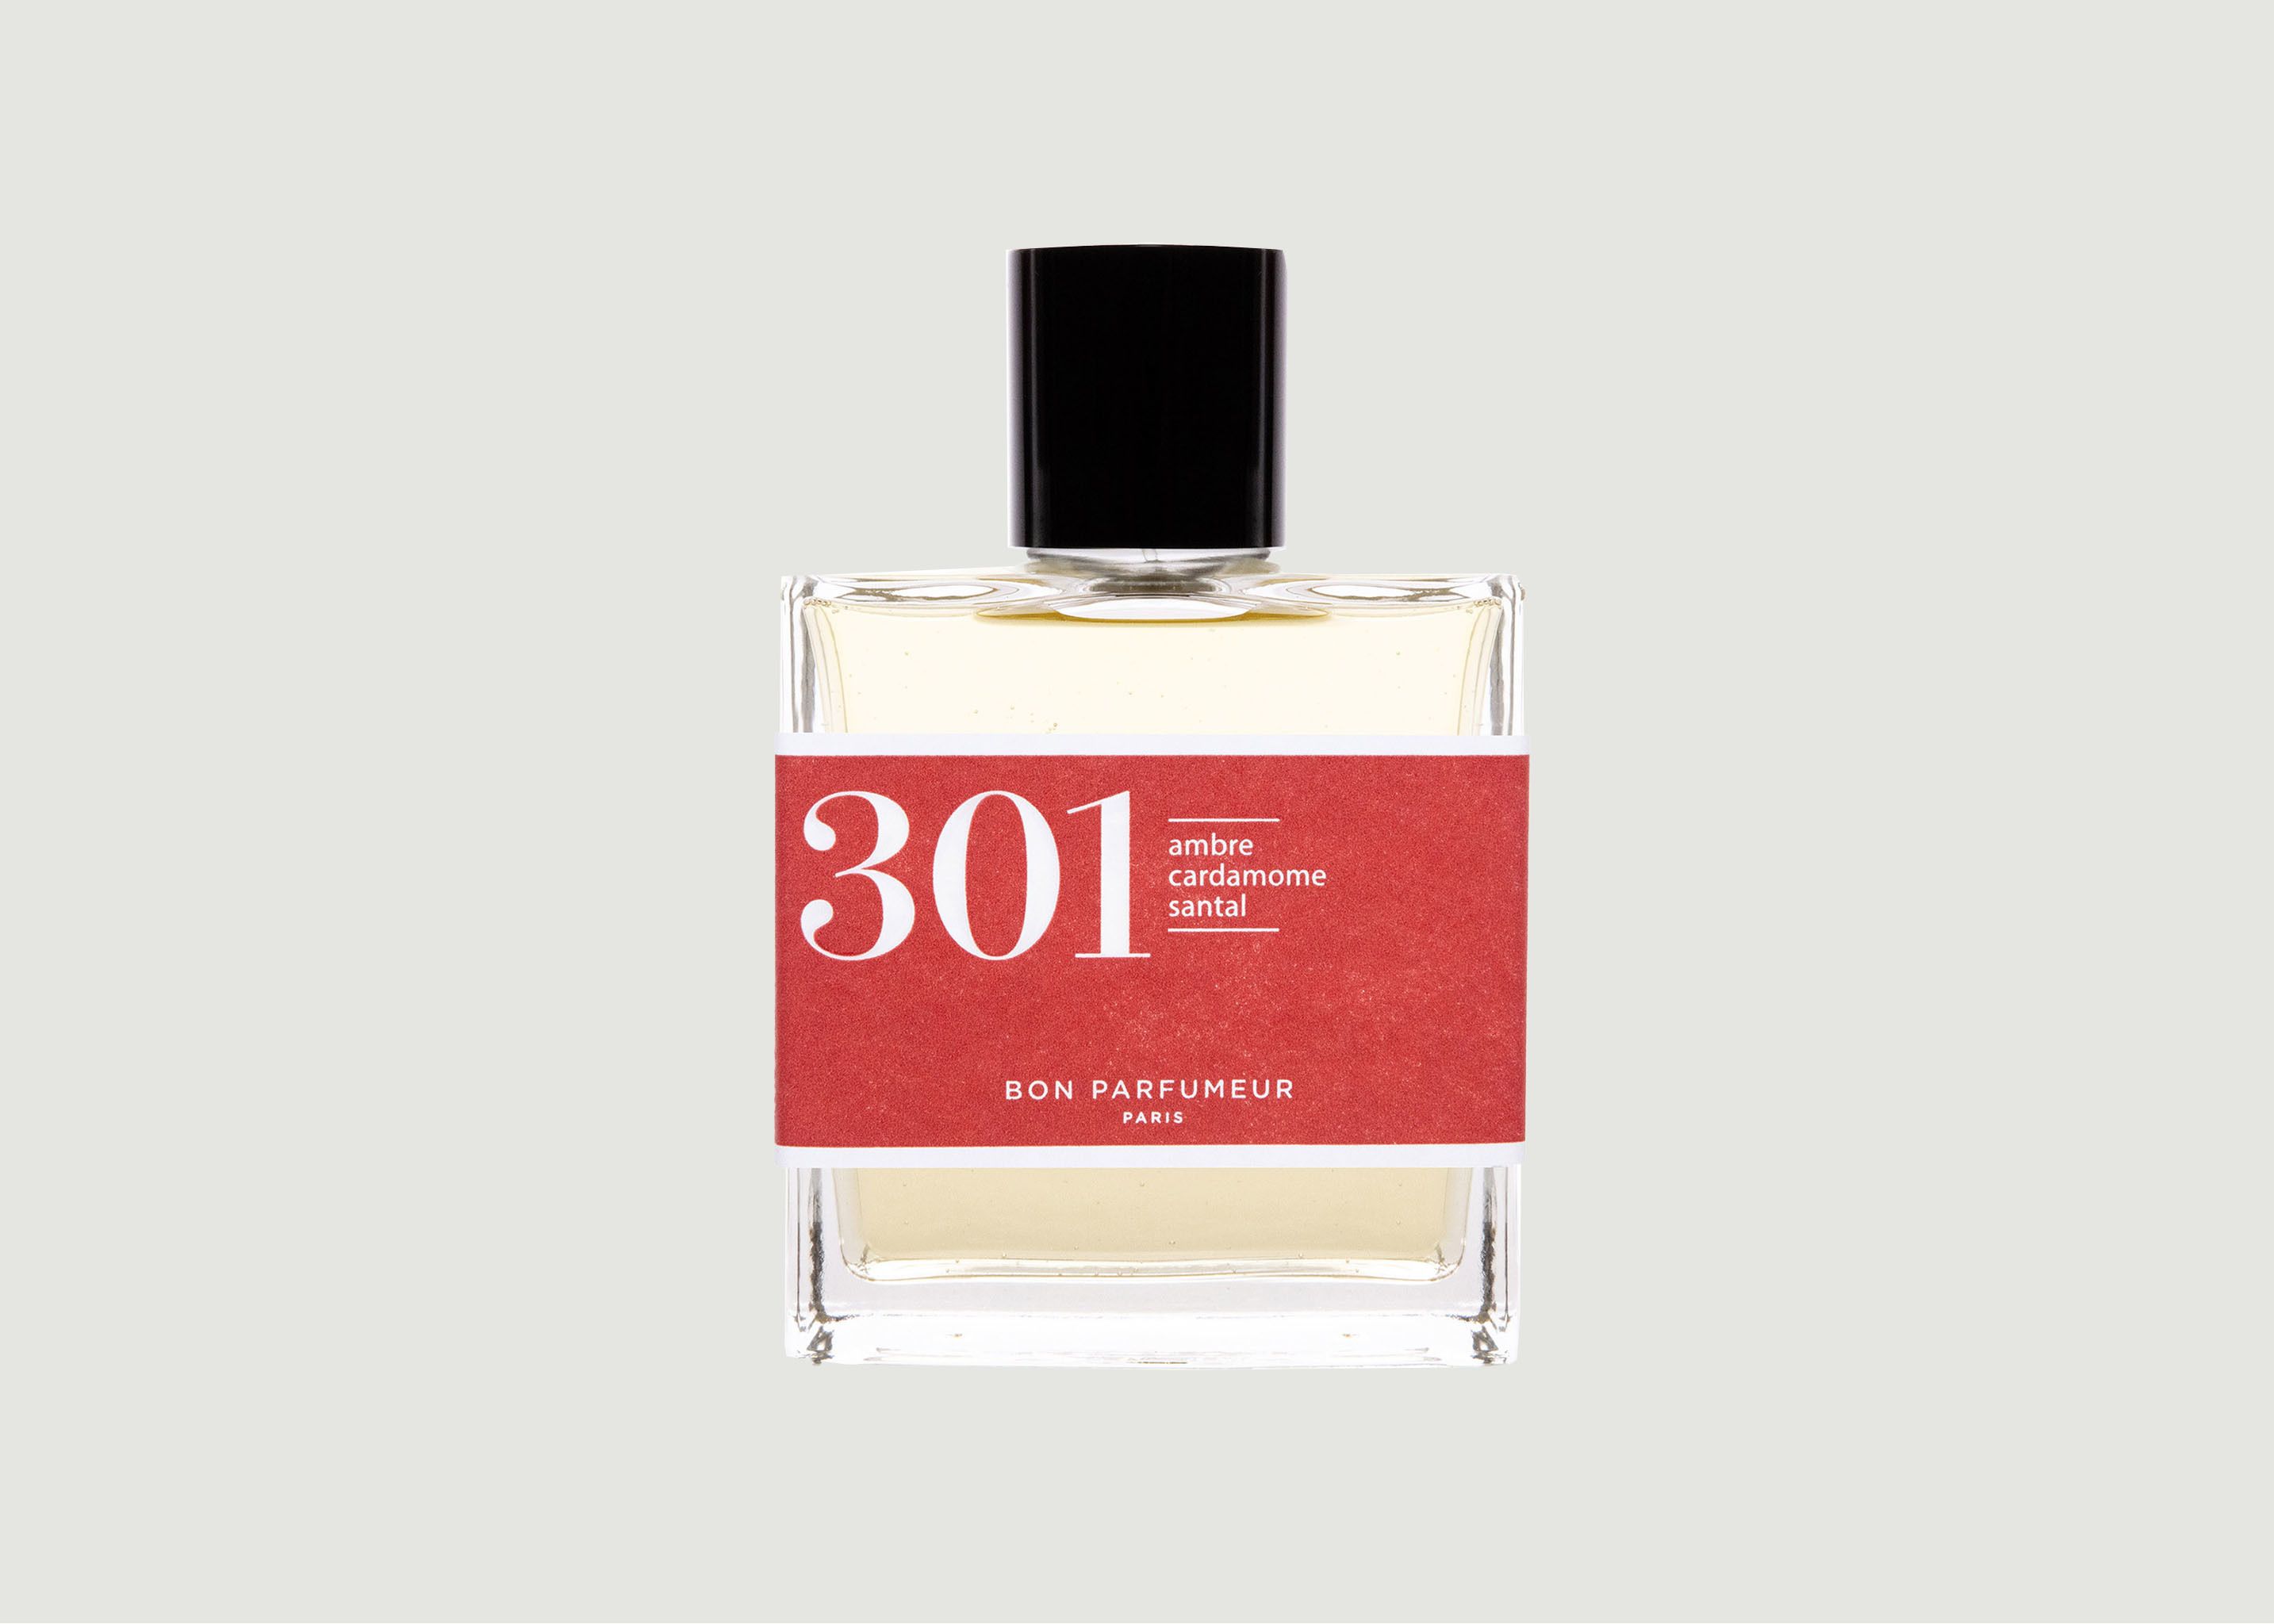 Eau de Parfum 301 : Bois de Santal, Ambre, Cardamome - Bon Parfumeur